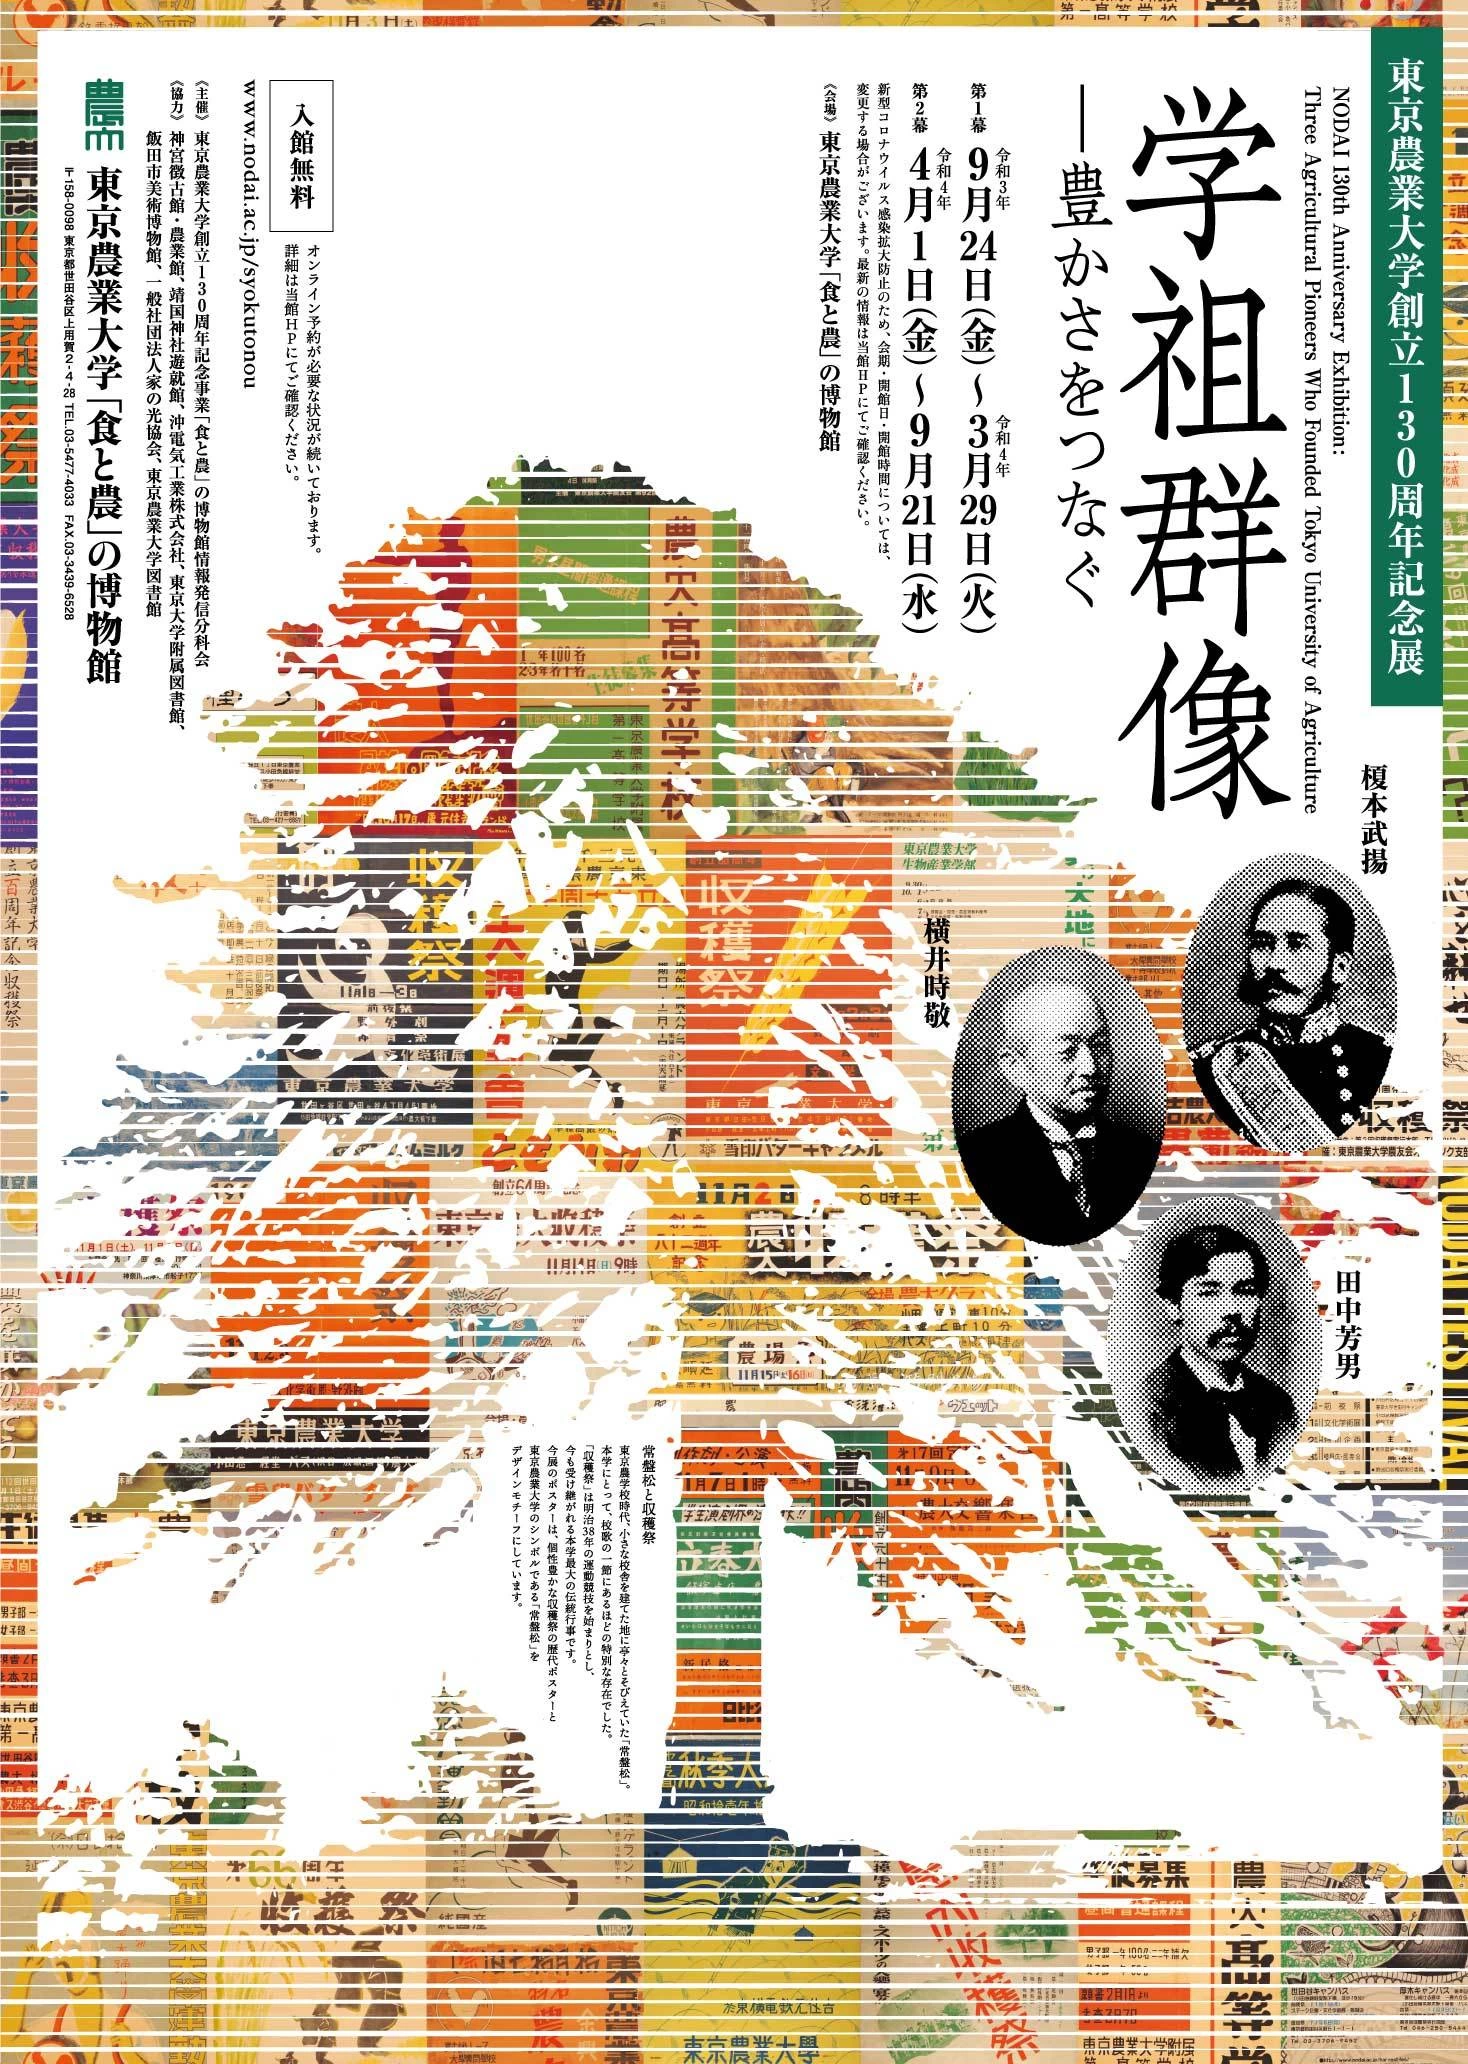 東京農業大学130周年記念展「学祖群像―豊かさをつなぐ」